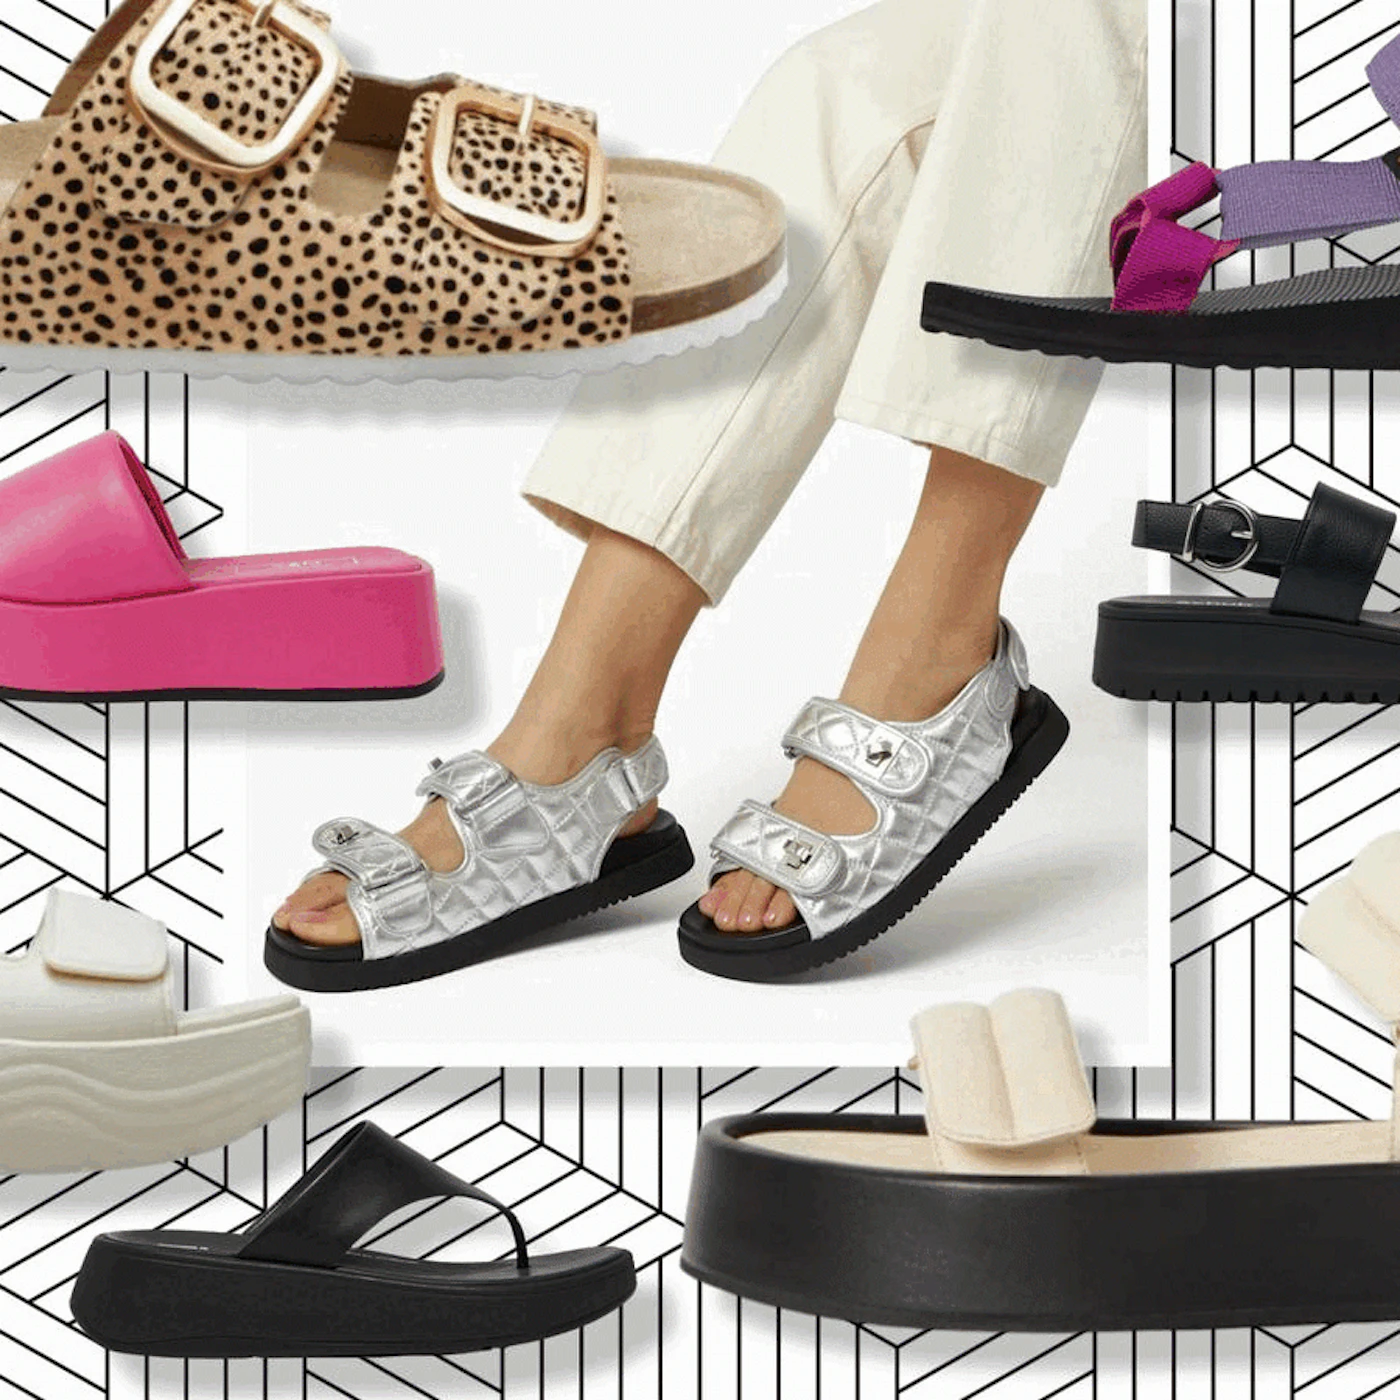 Best comfortable sandals for women: Birkenstocks, Teva and Crocs